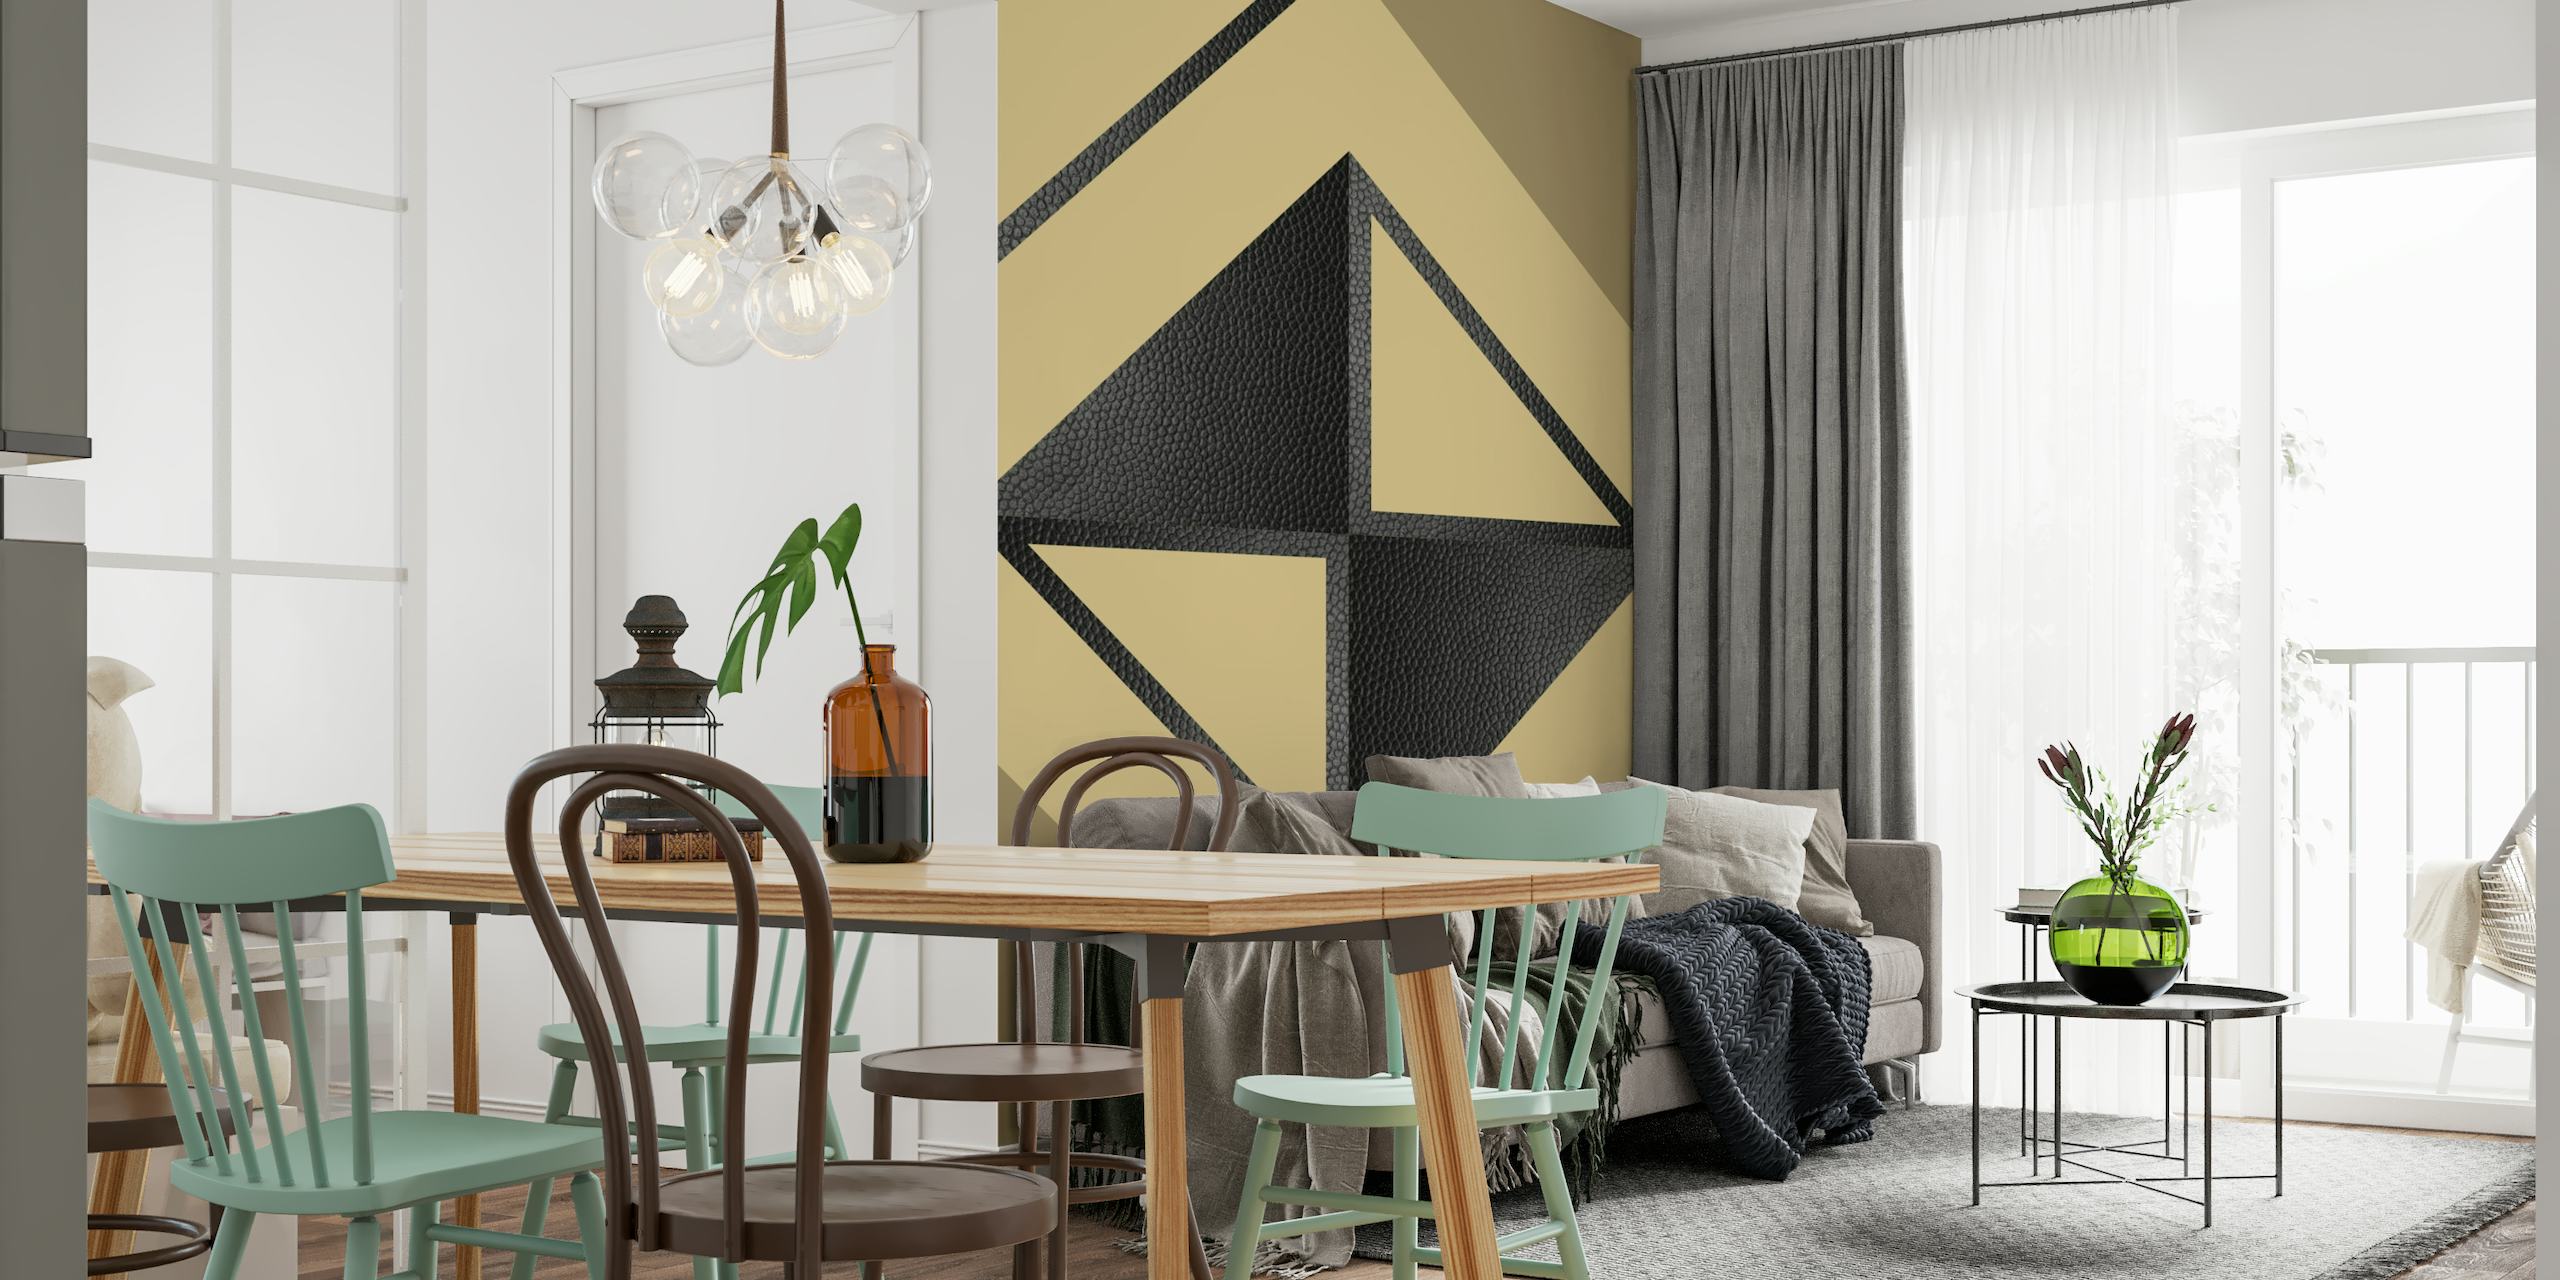 Žlutá a černá abstraktní geometrická fototapeta s minimalistickými trojúhelníky a tvary